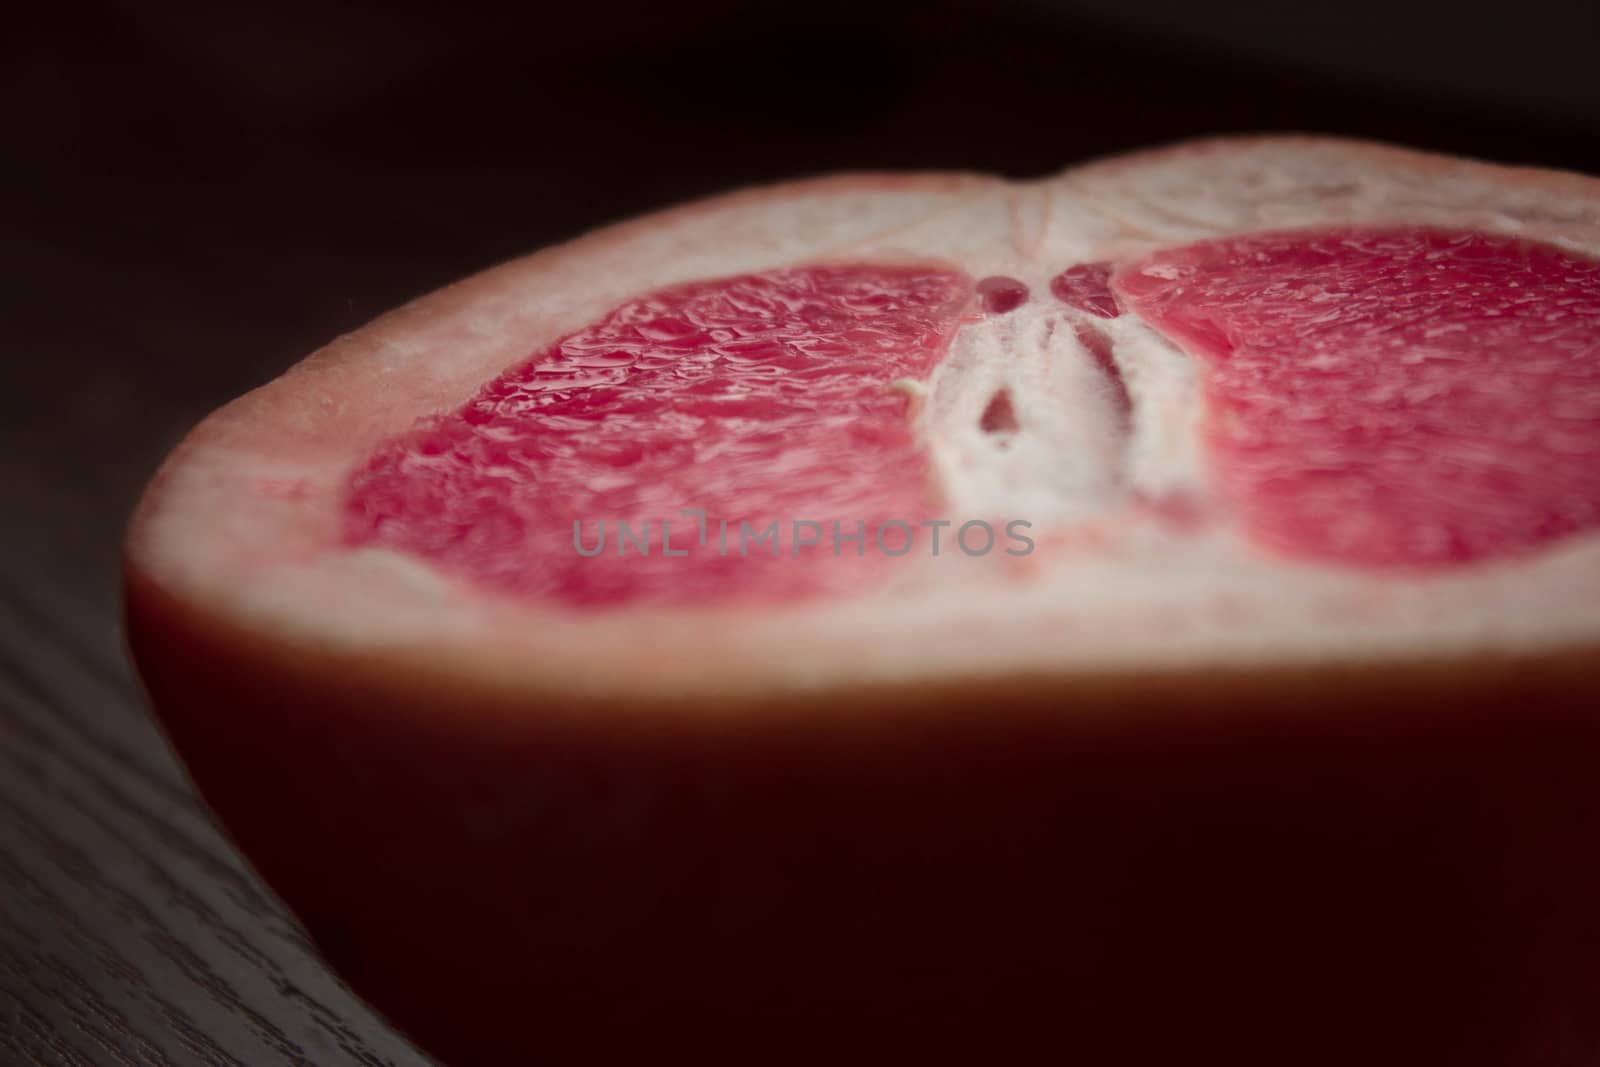 fresh grapefruit by liwei12